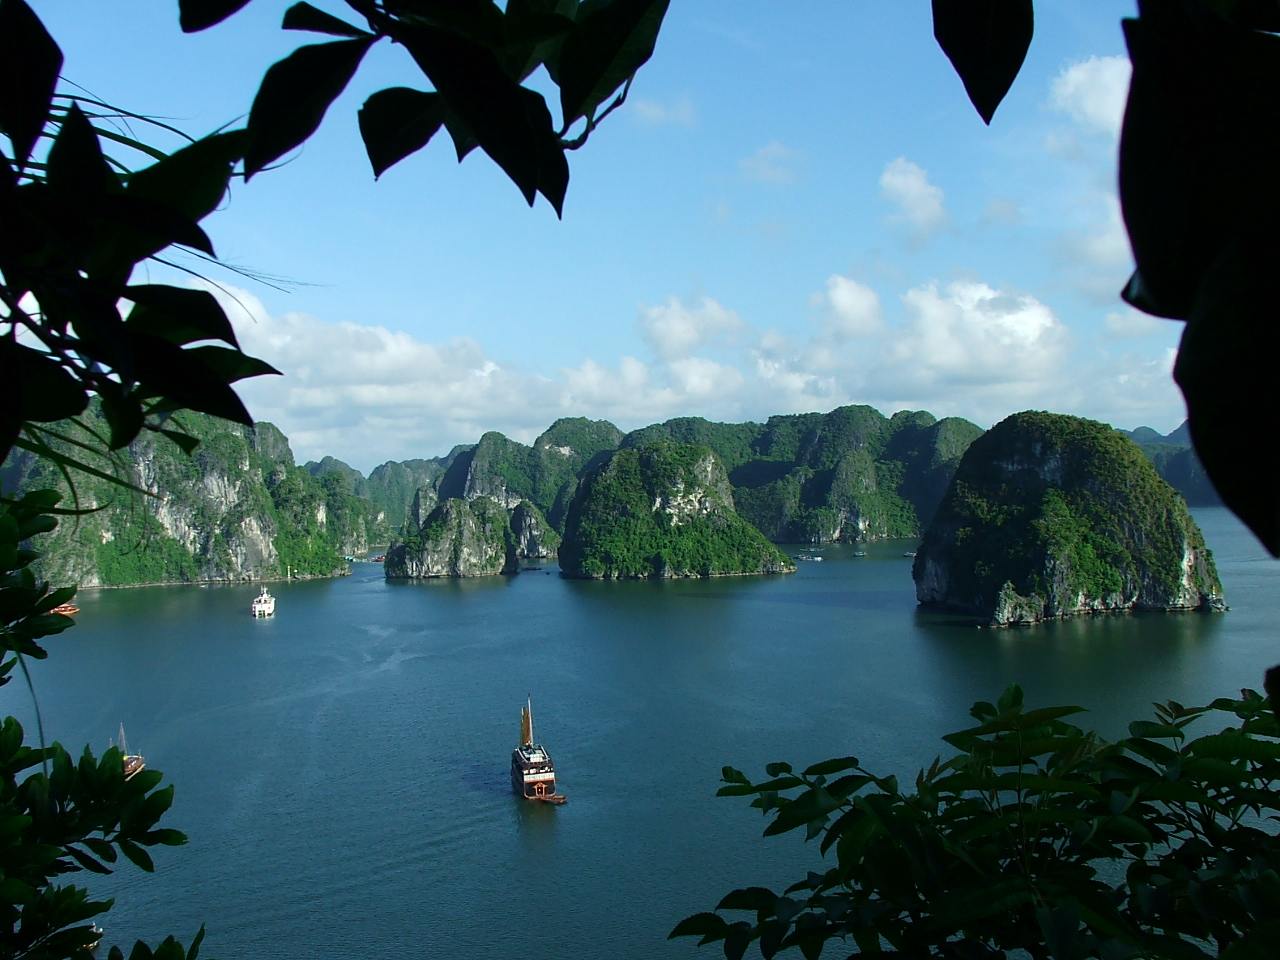 La baie d'Halong au Vietnam